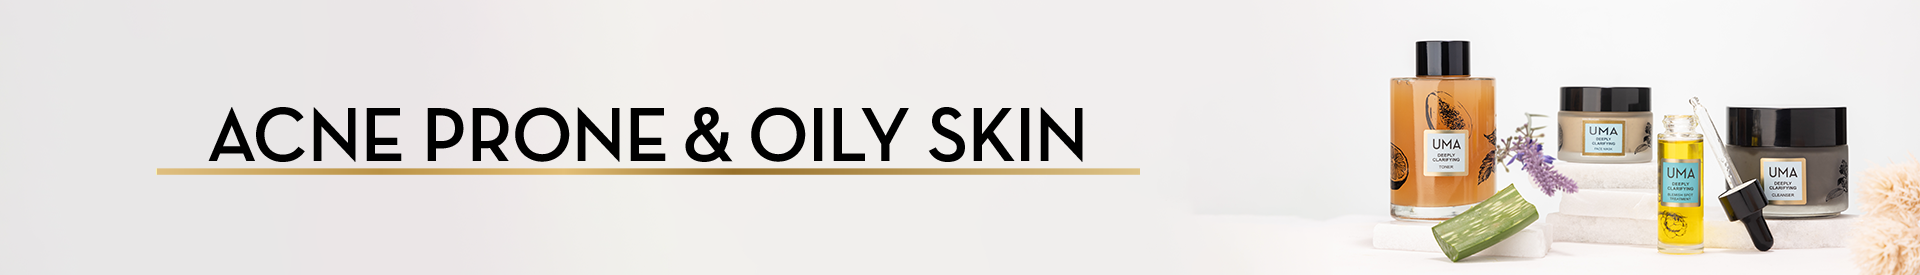 Acne Prone & Oily Skin